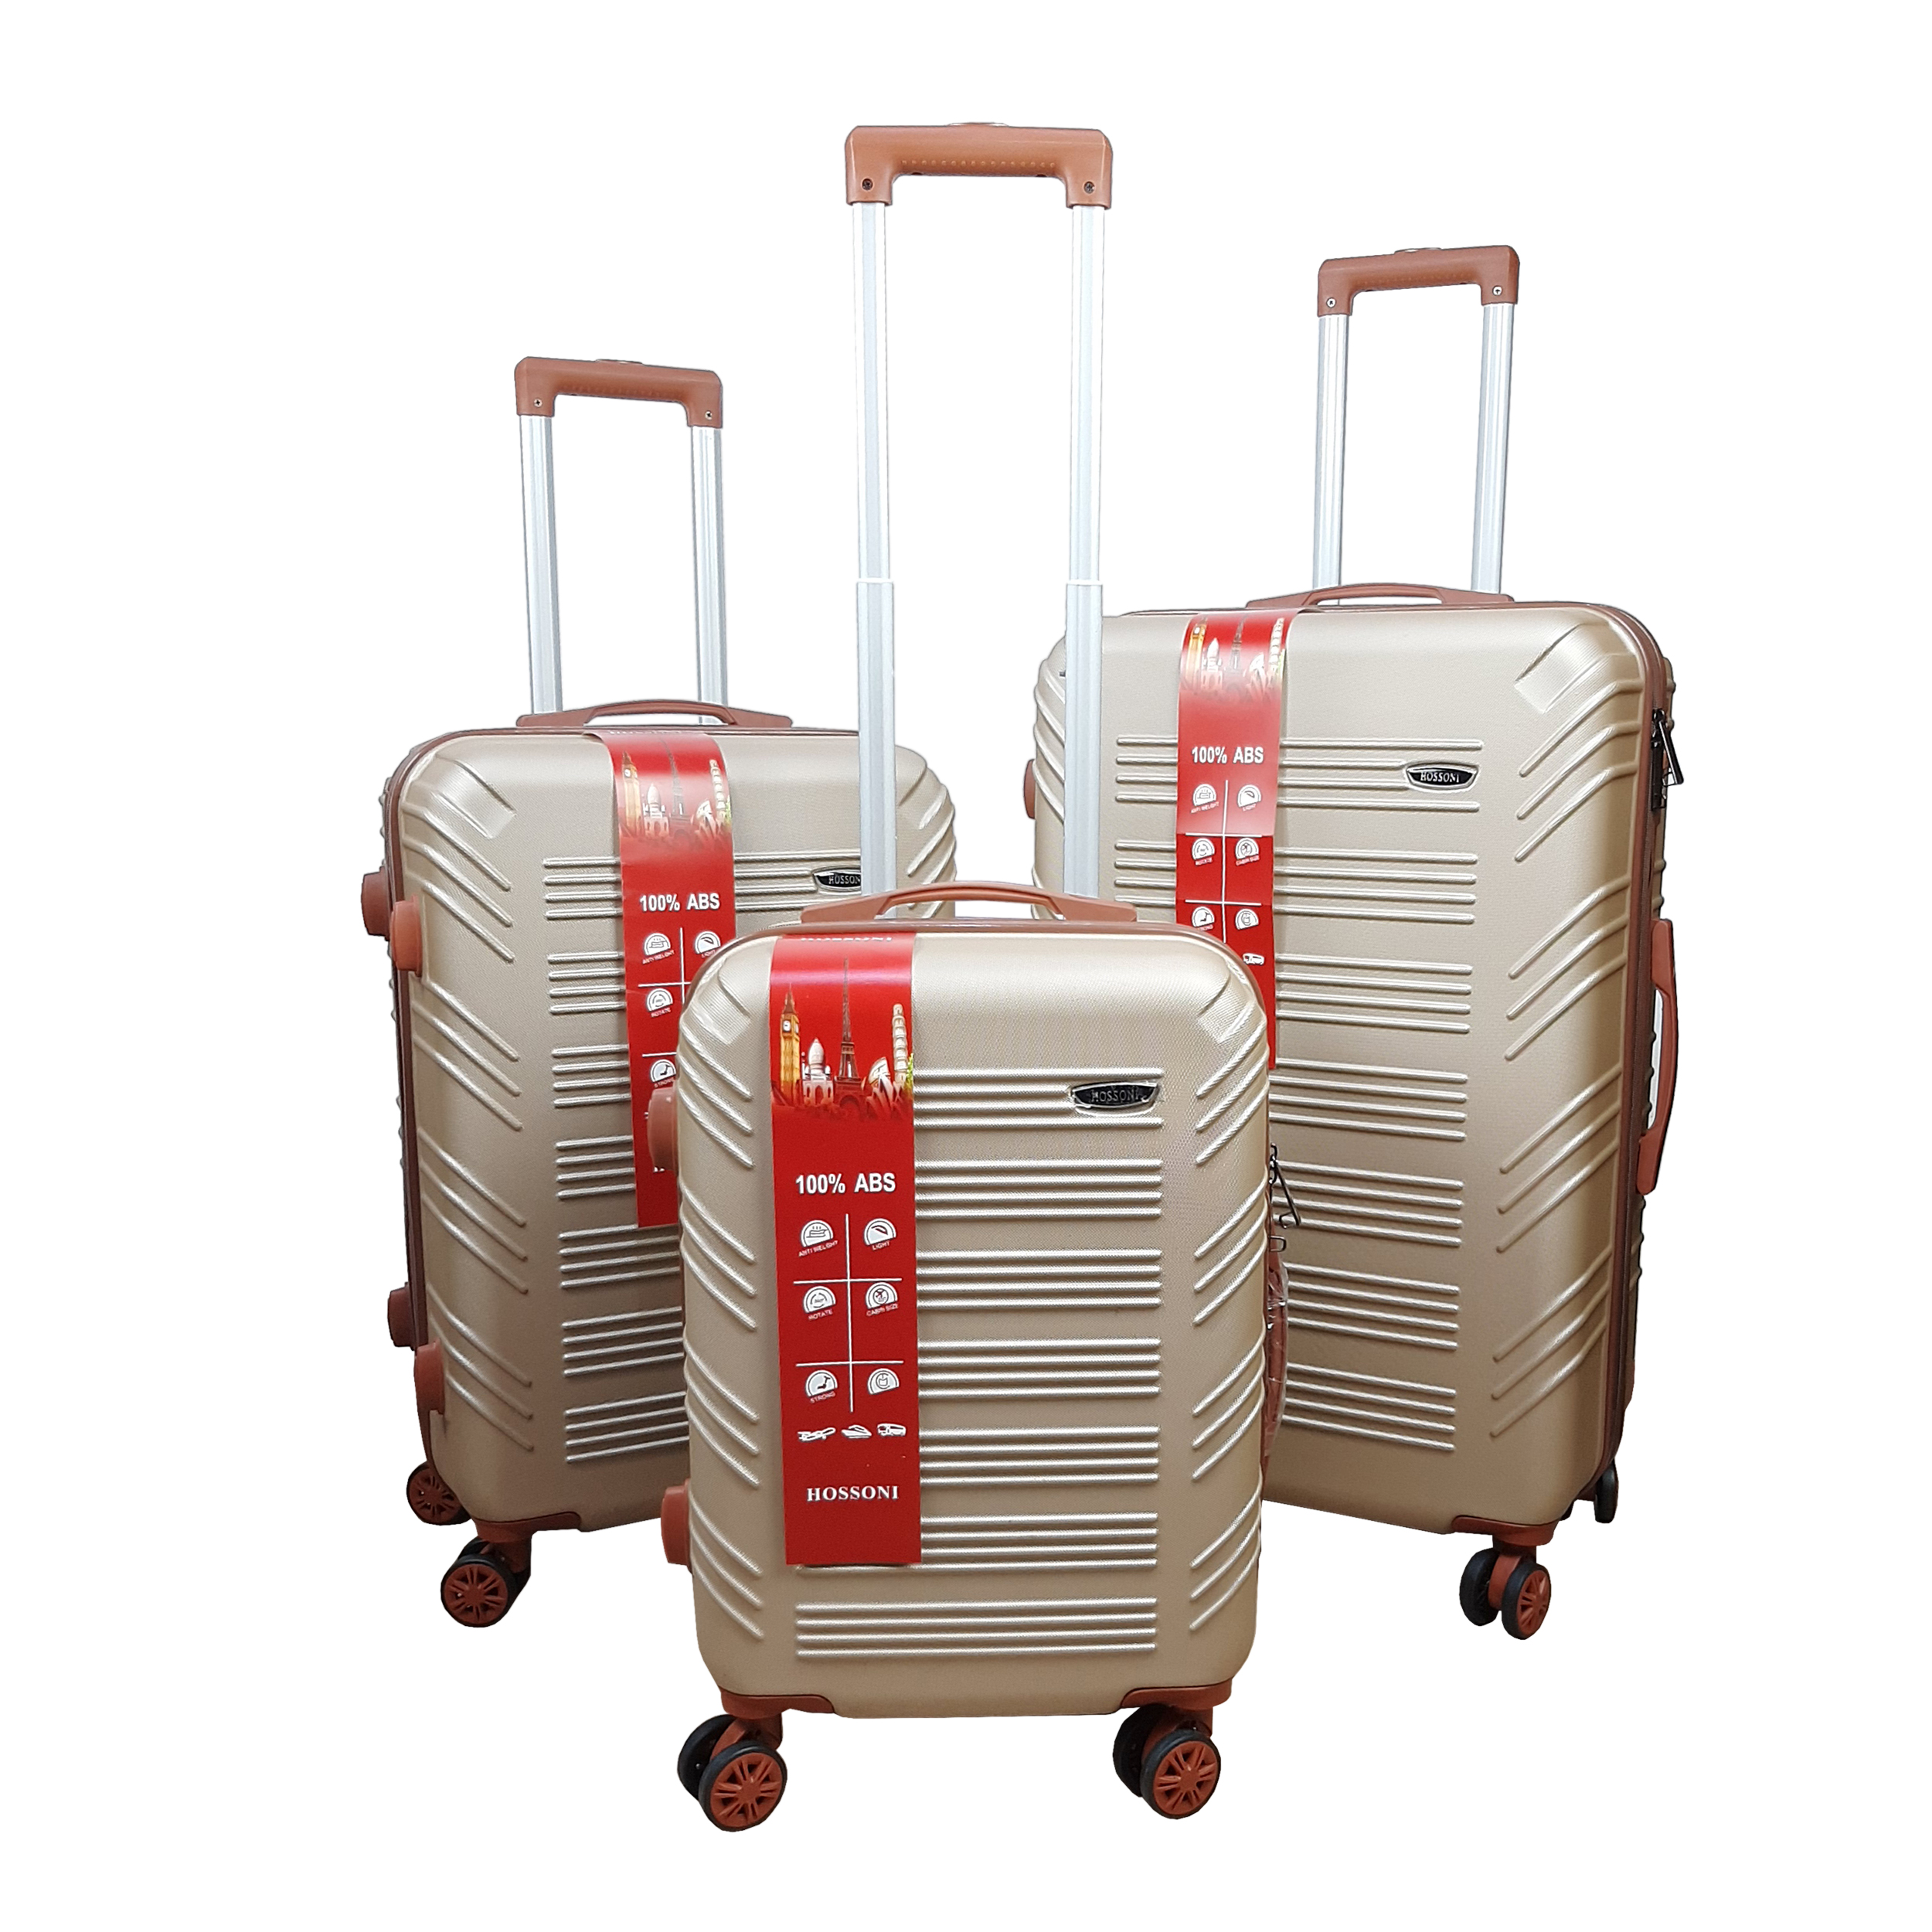 نکته خرید - قیمت روز مجموعه سه عددی چمدان هاسونی مدل K6060 خرید